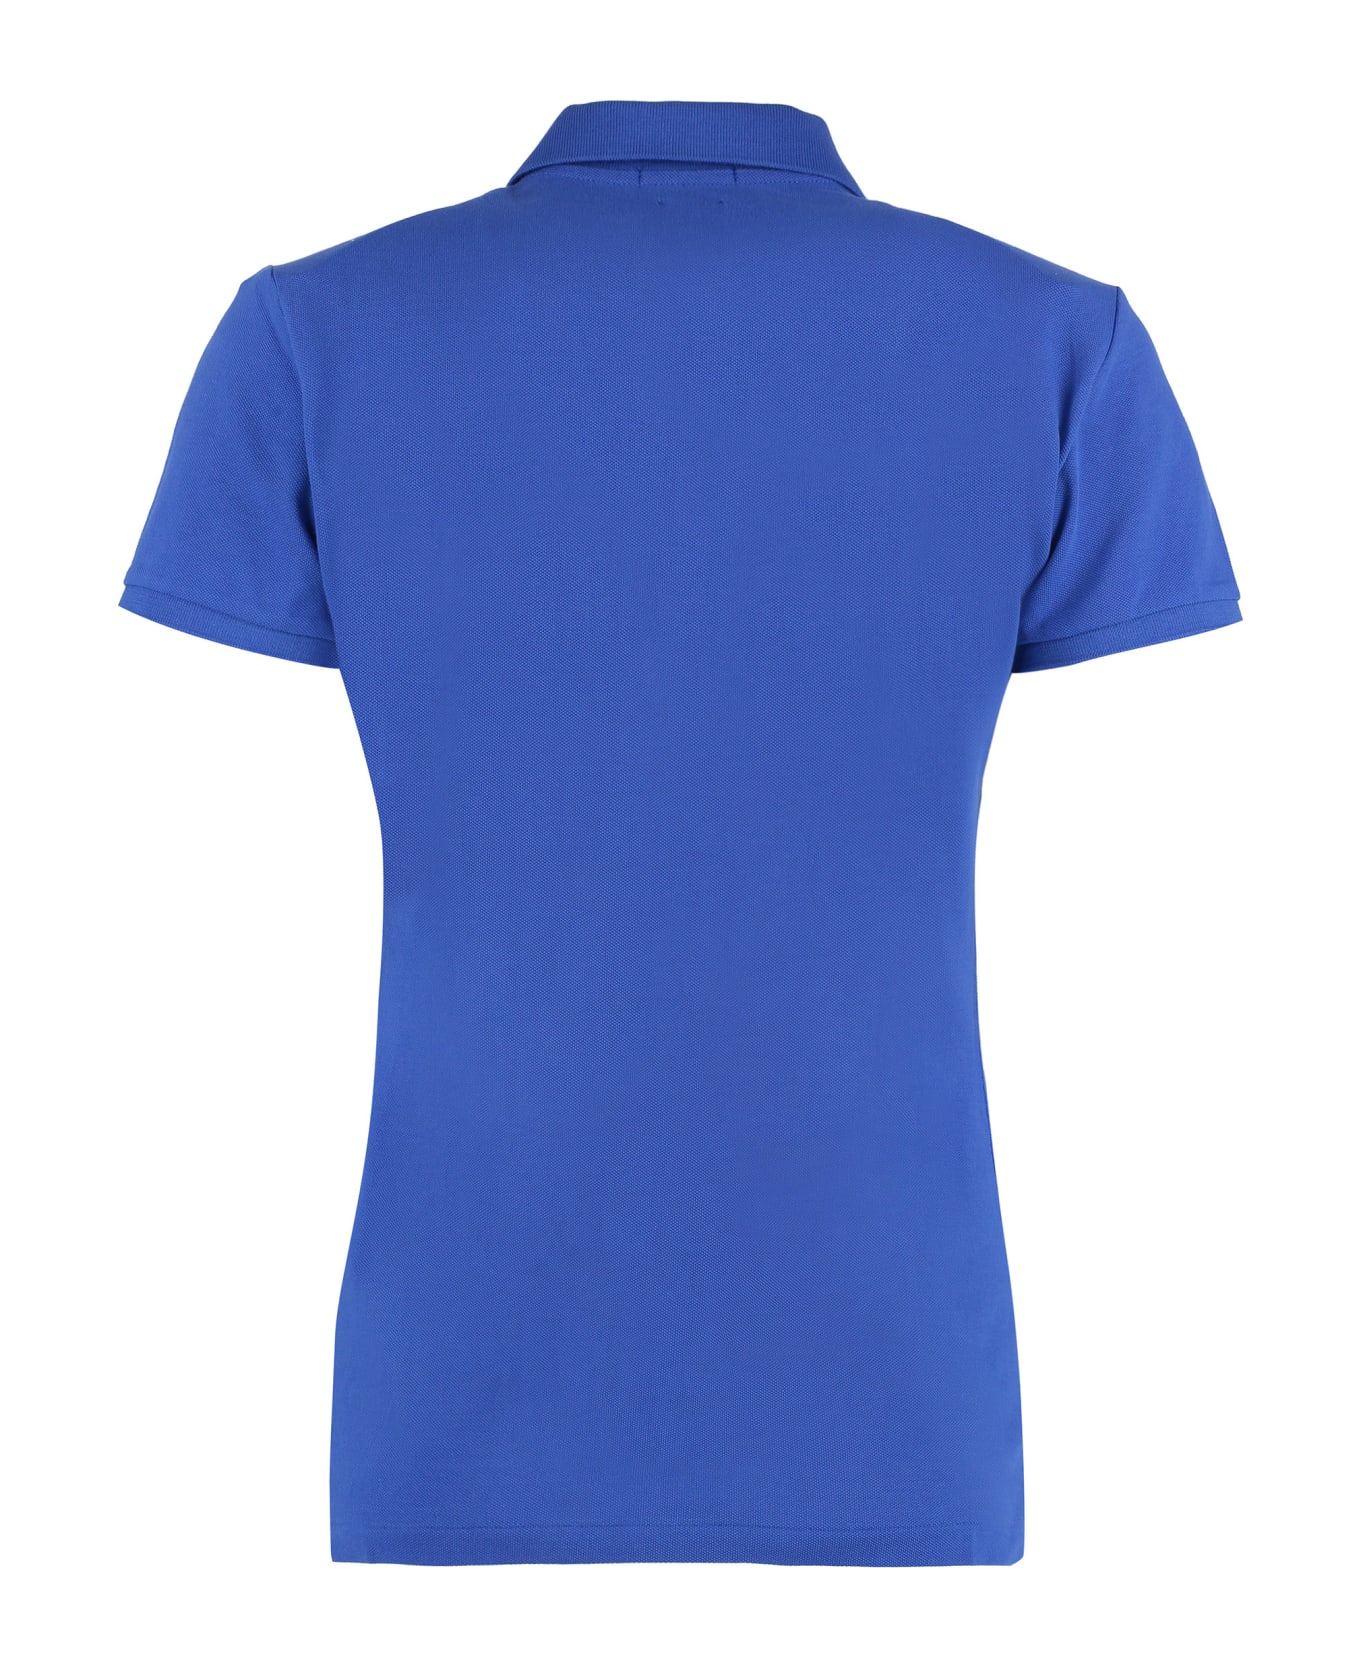 Ralph Lauren Logo Polo Shirt - Iris Blue